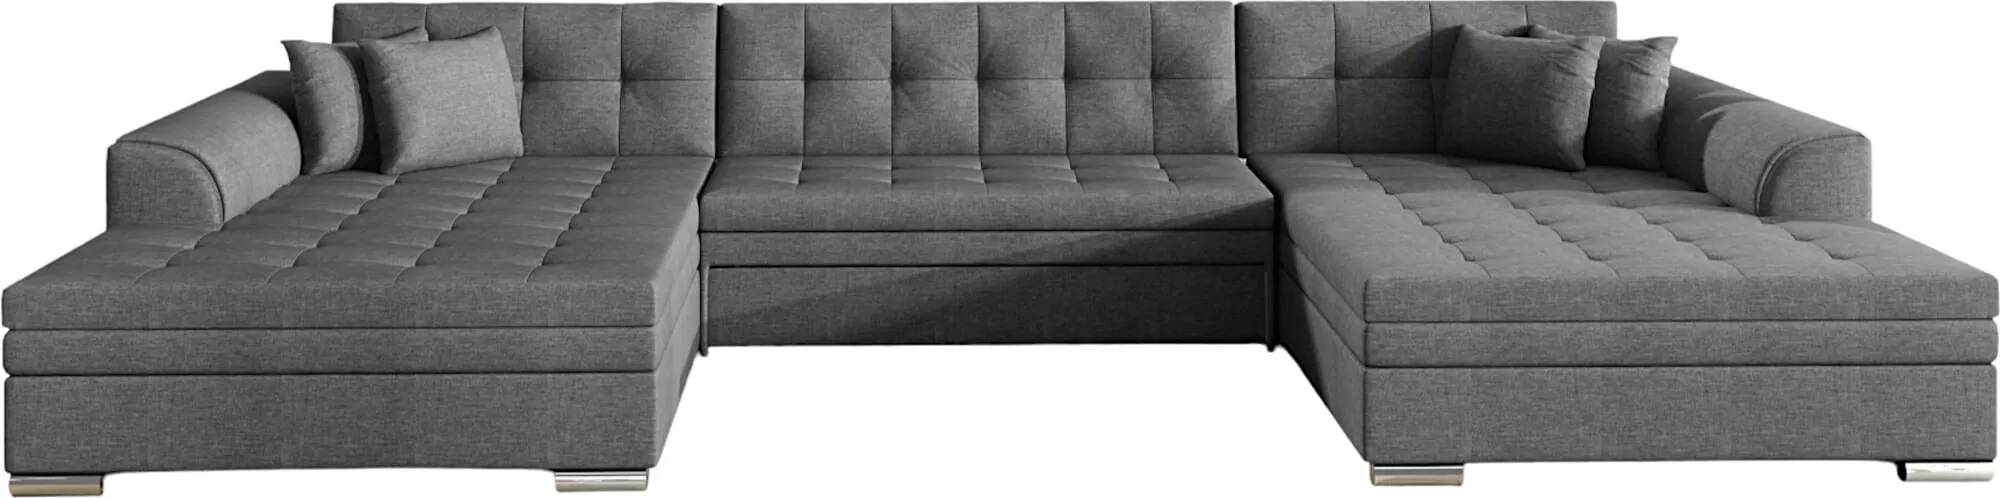 Canapé d'angle convertible en tissu gris foncé